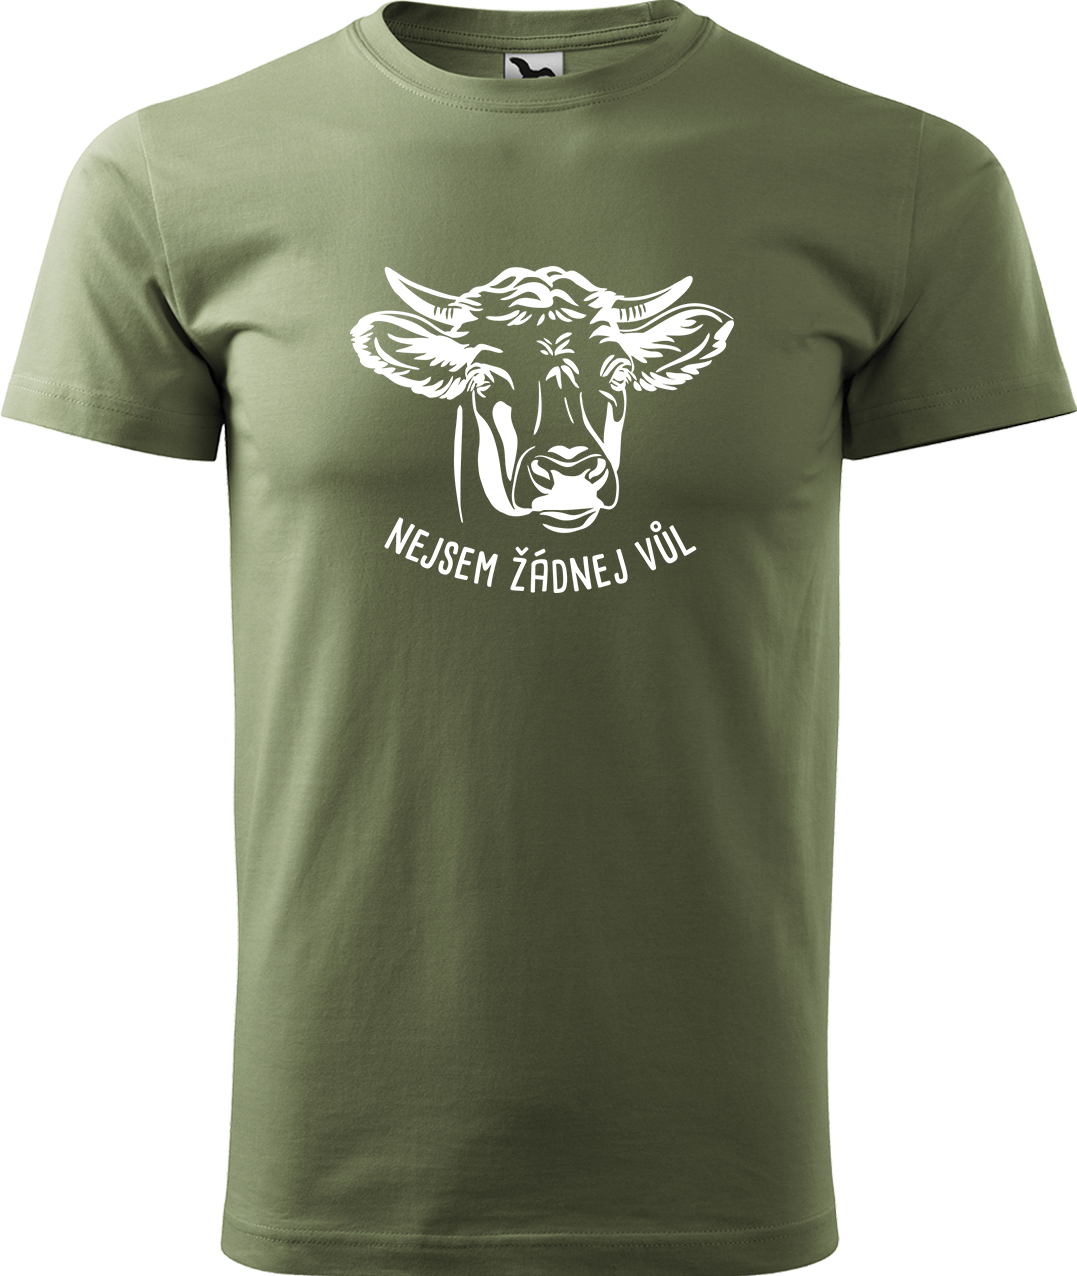 Pánské tričko s krávou - Nejsem žádnej vůl Velikost: L, Barva: Světlá khaki (28), Střih: pánský